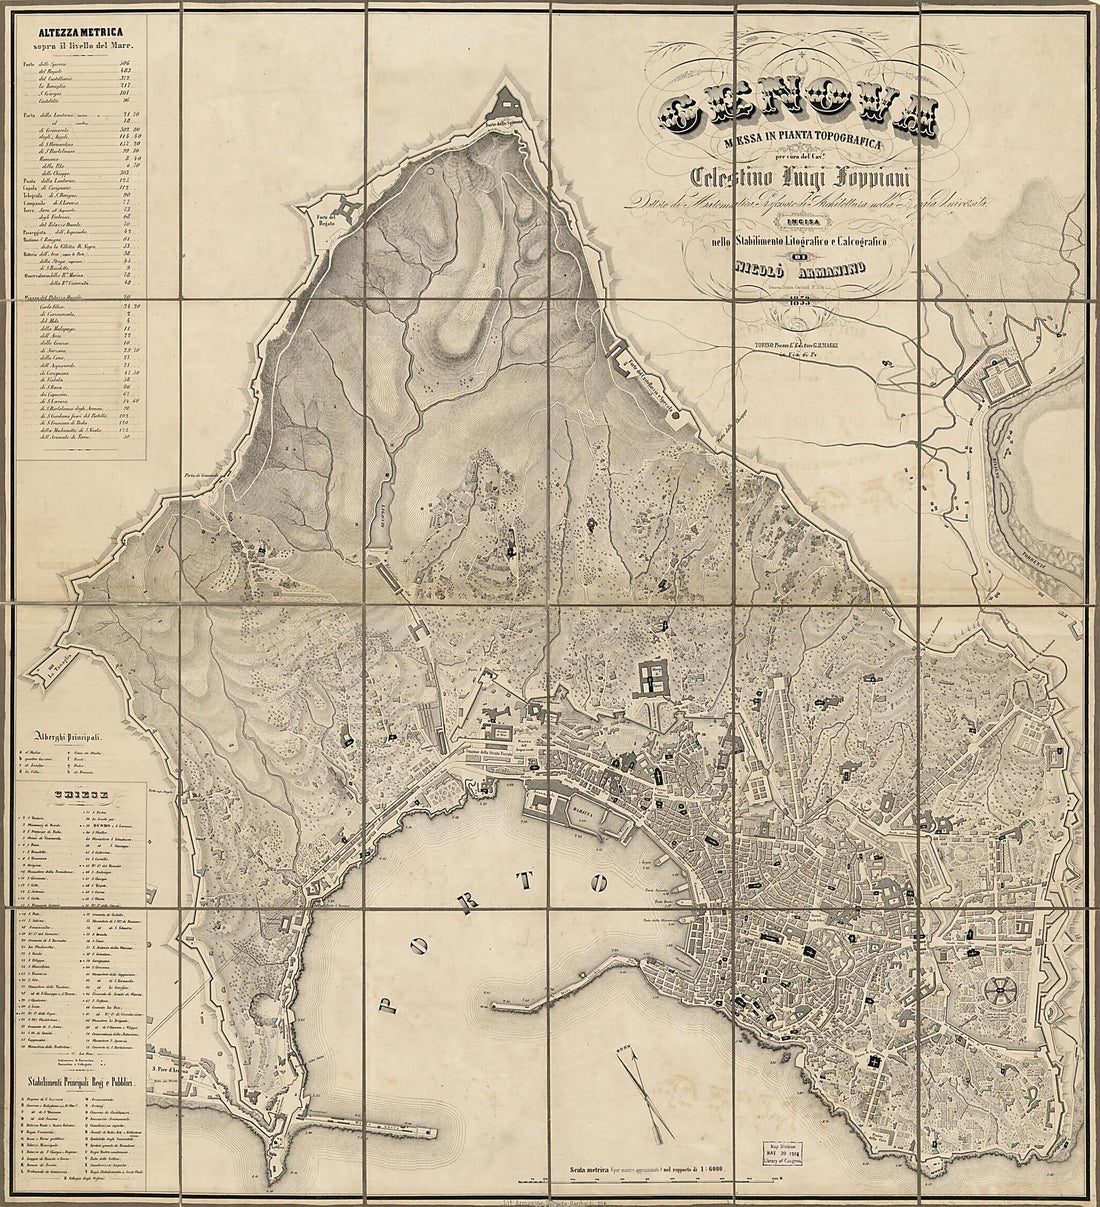 This old map of Genova Messa In Pianta Topografica (Pianta Di Genova, City of Genoa) from 1853 was created by Millard Fillmore, Celestino Luigi Foppiani,  Lit. Armanino in 1853